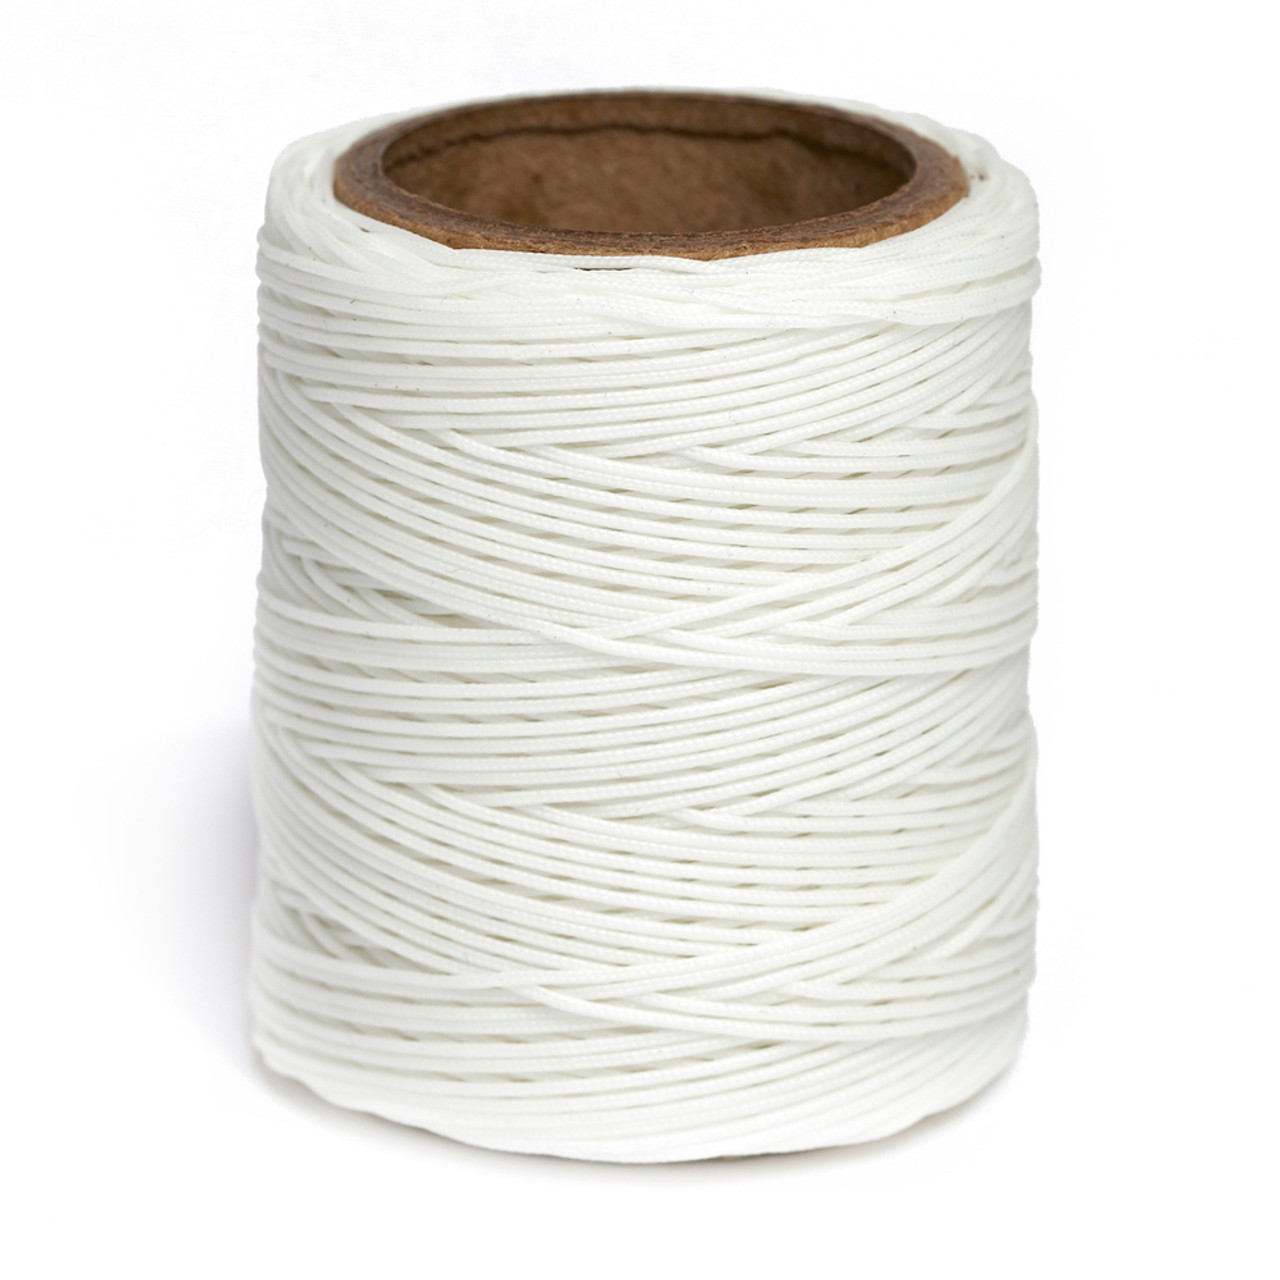 Maine Thread, Braided Waxed Cord, 70 yard spool, White 